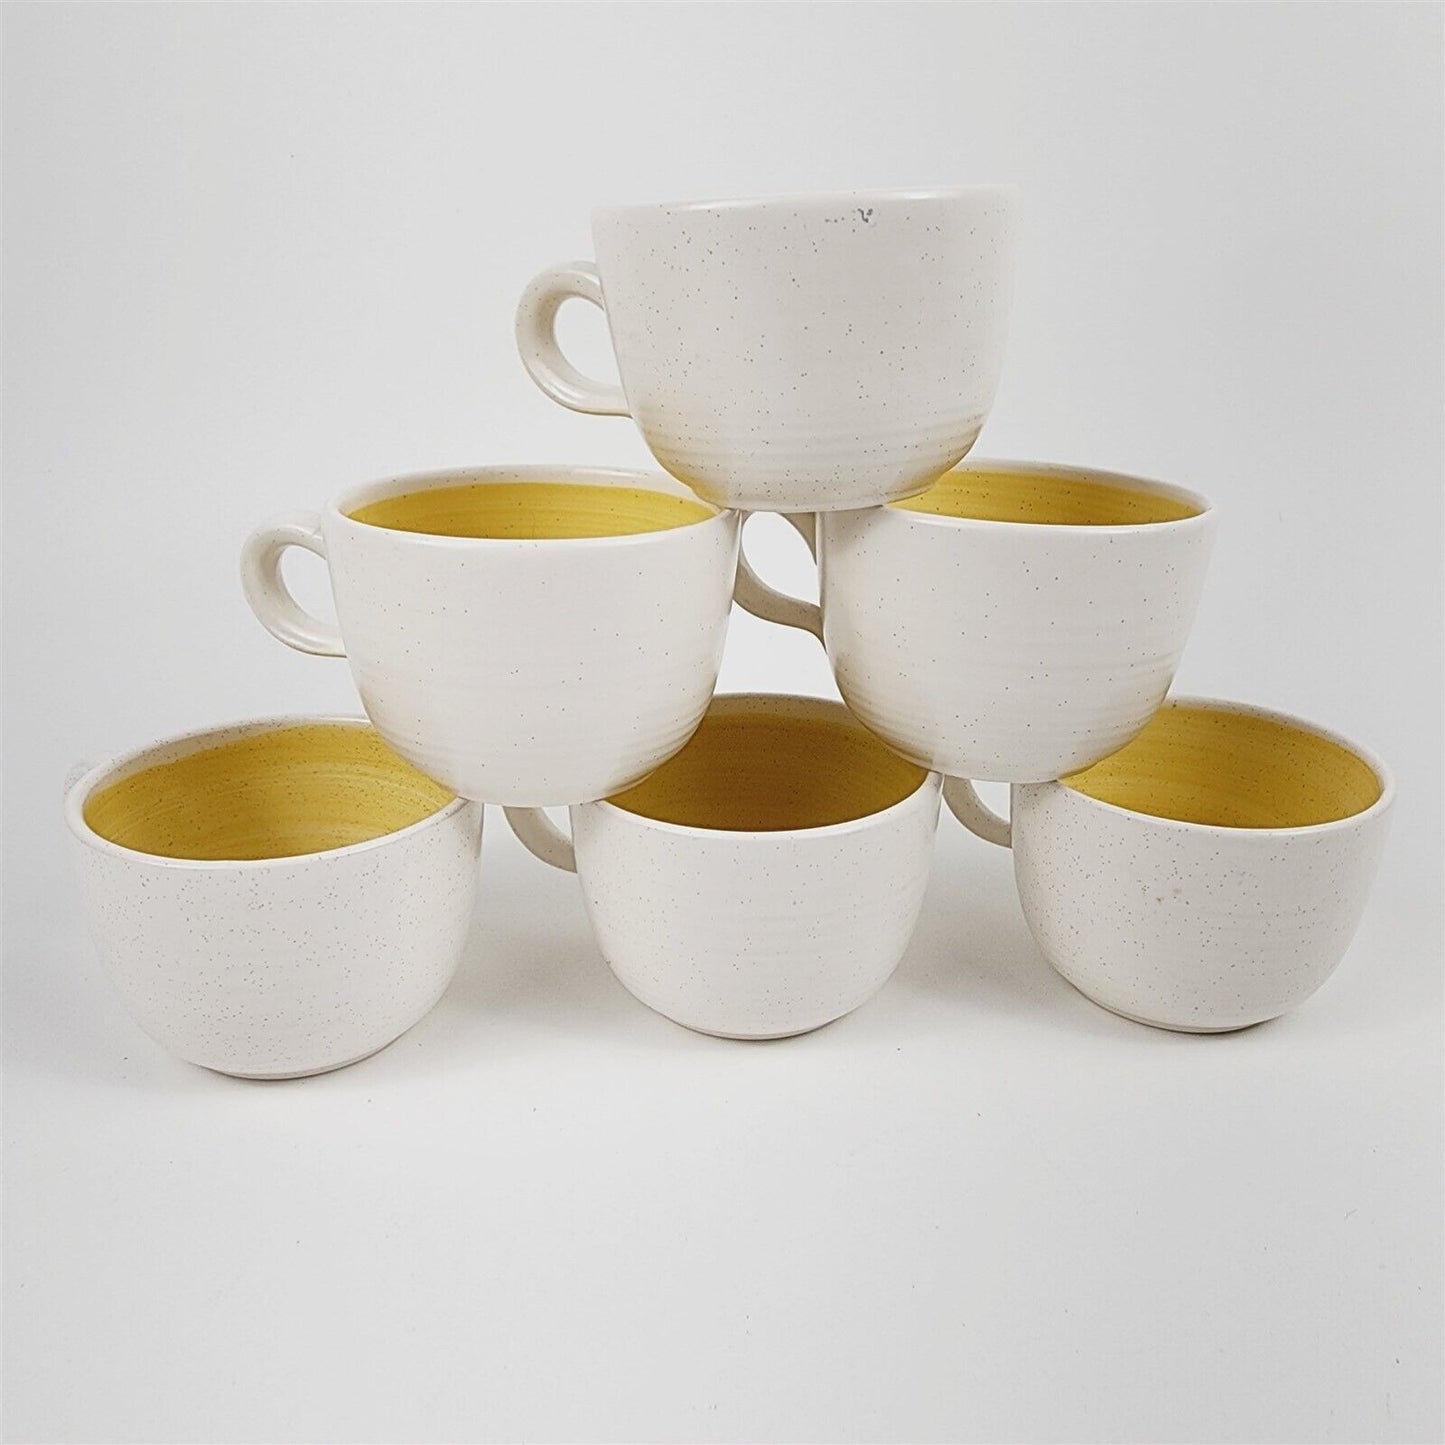 6 Vintage Franciscan Hacienda Gold Beige Speckled Tea Cups